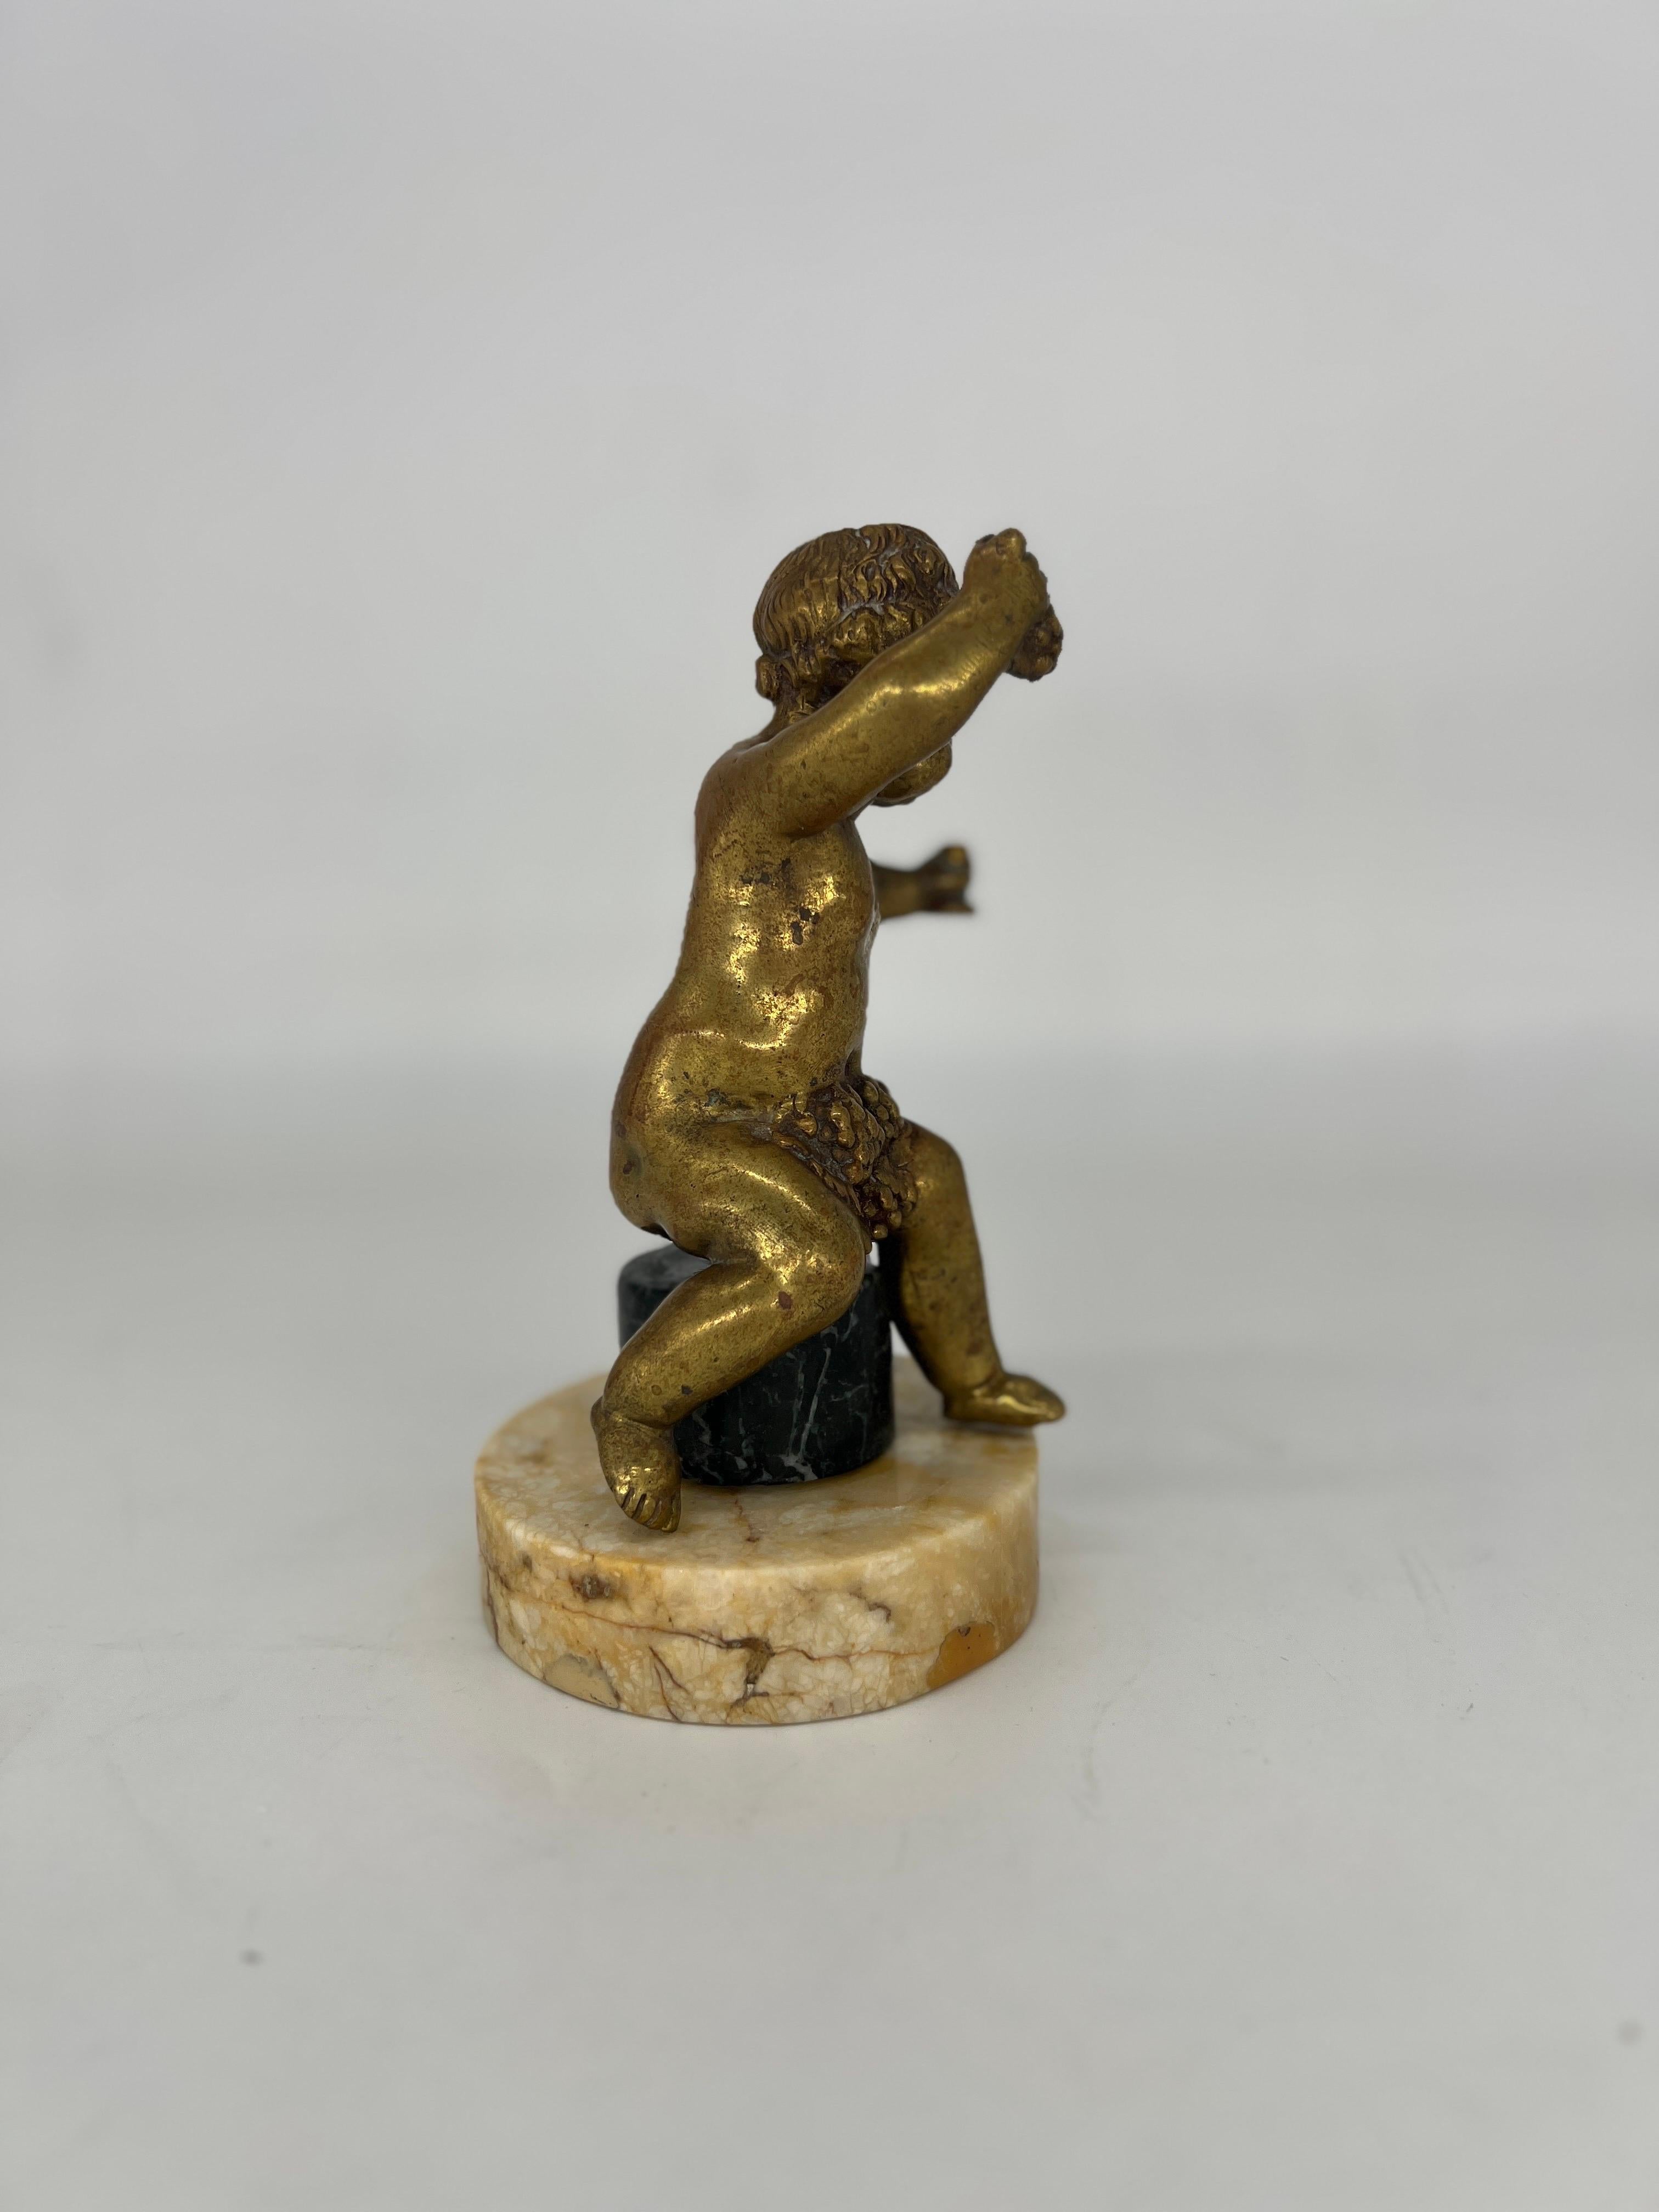 Antique French Gilt Bronze “Grapes into Wine” Cherub Statue Falconet Style In Good Condition For Sale In Atlanta, GA